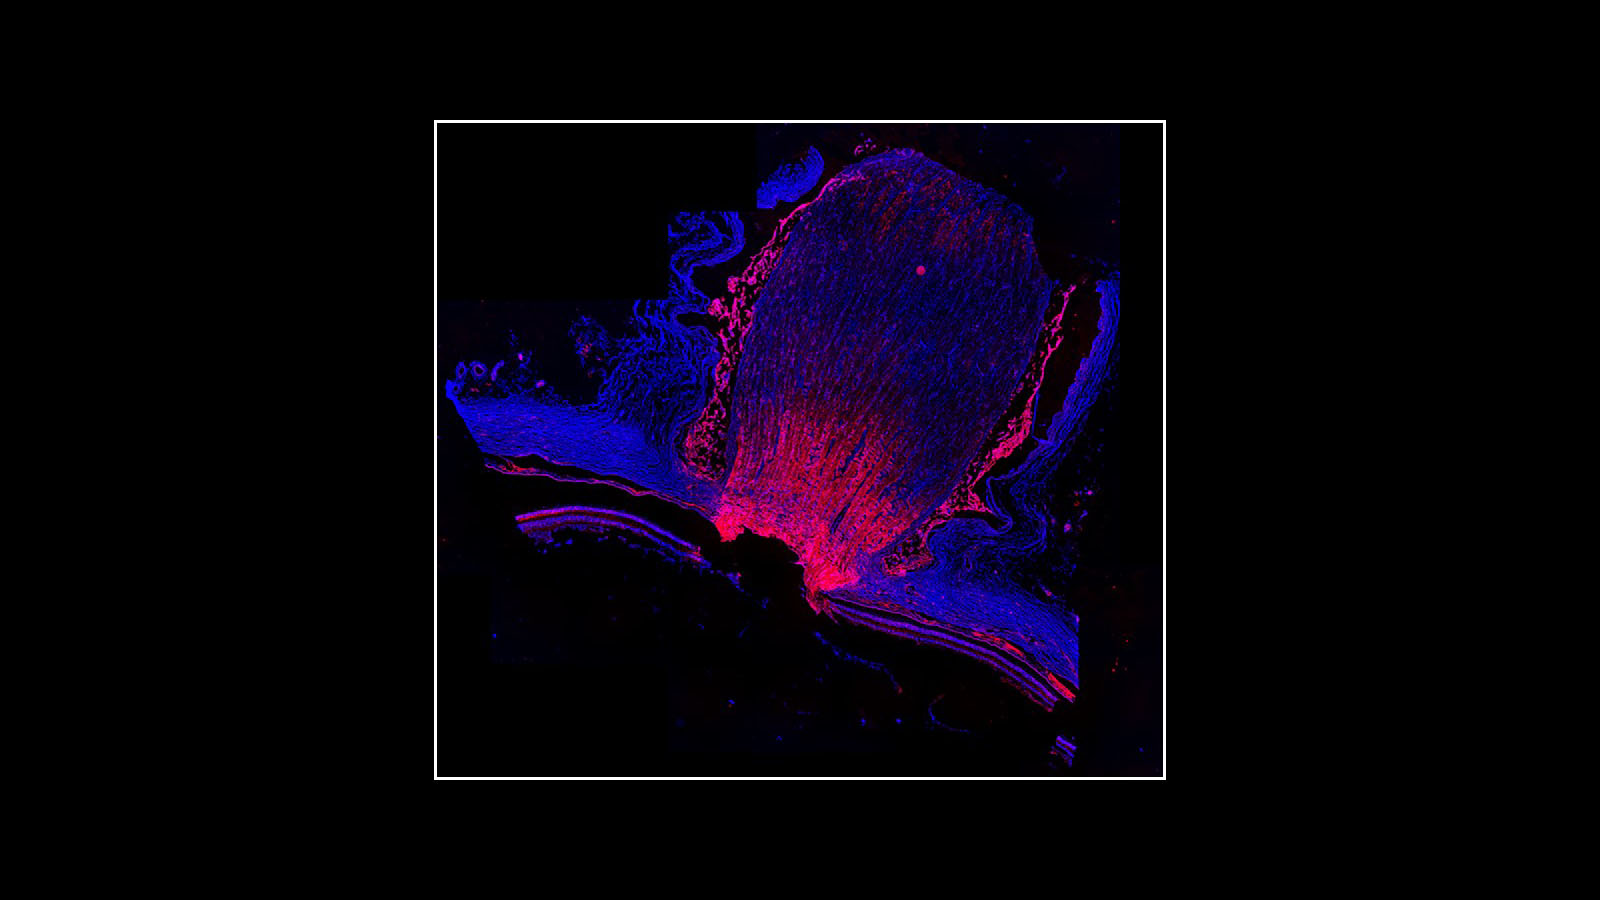 Immunofluorescence image of the human optic nerve, courtesy of Dr. Angela Kruse of Vanderbilt University